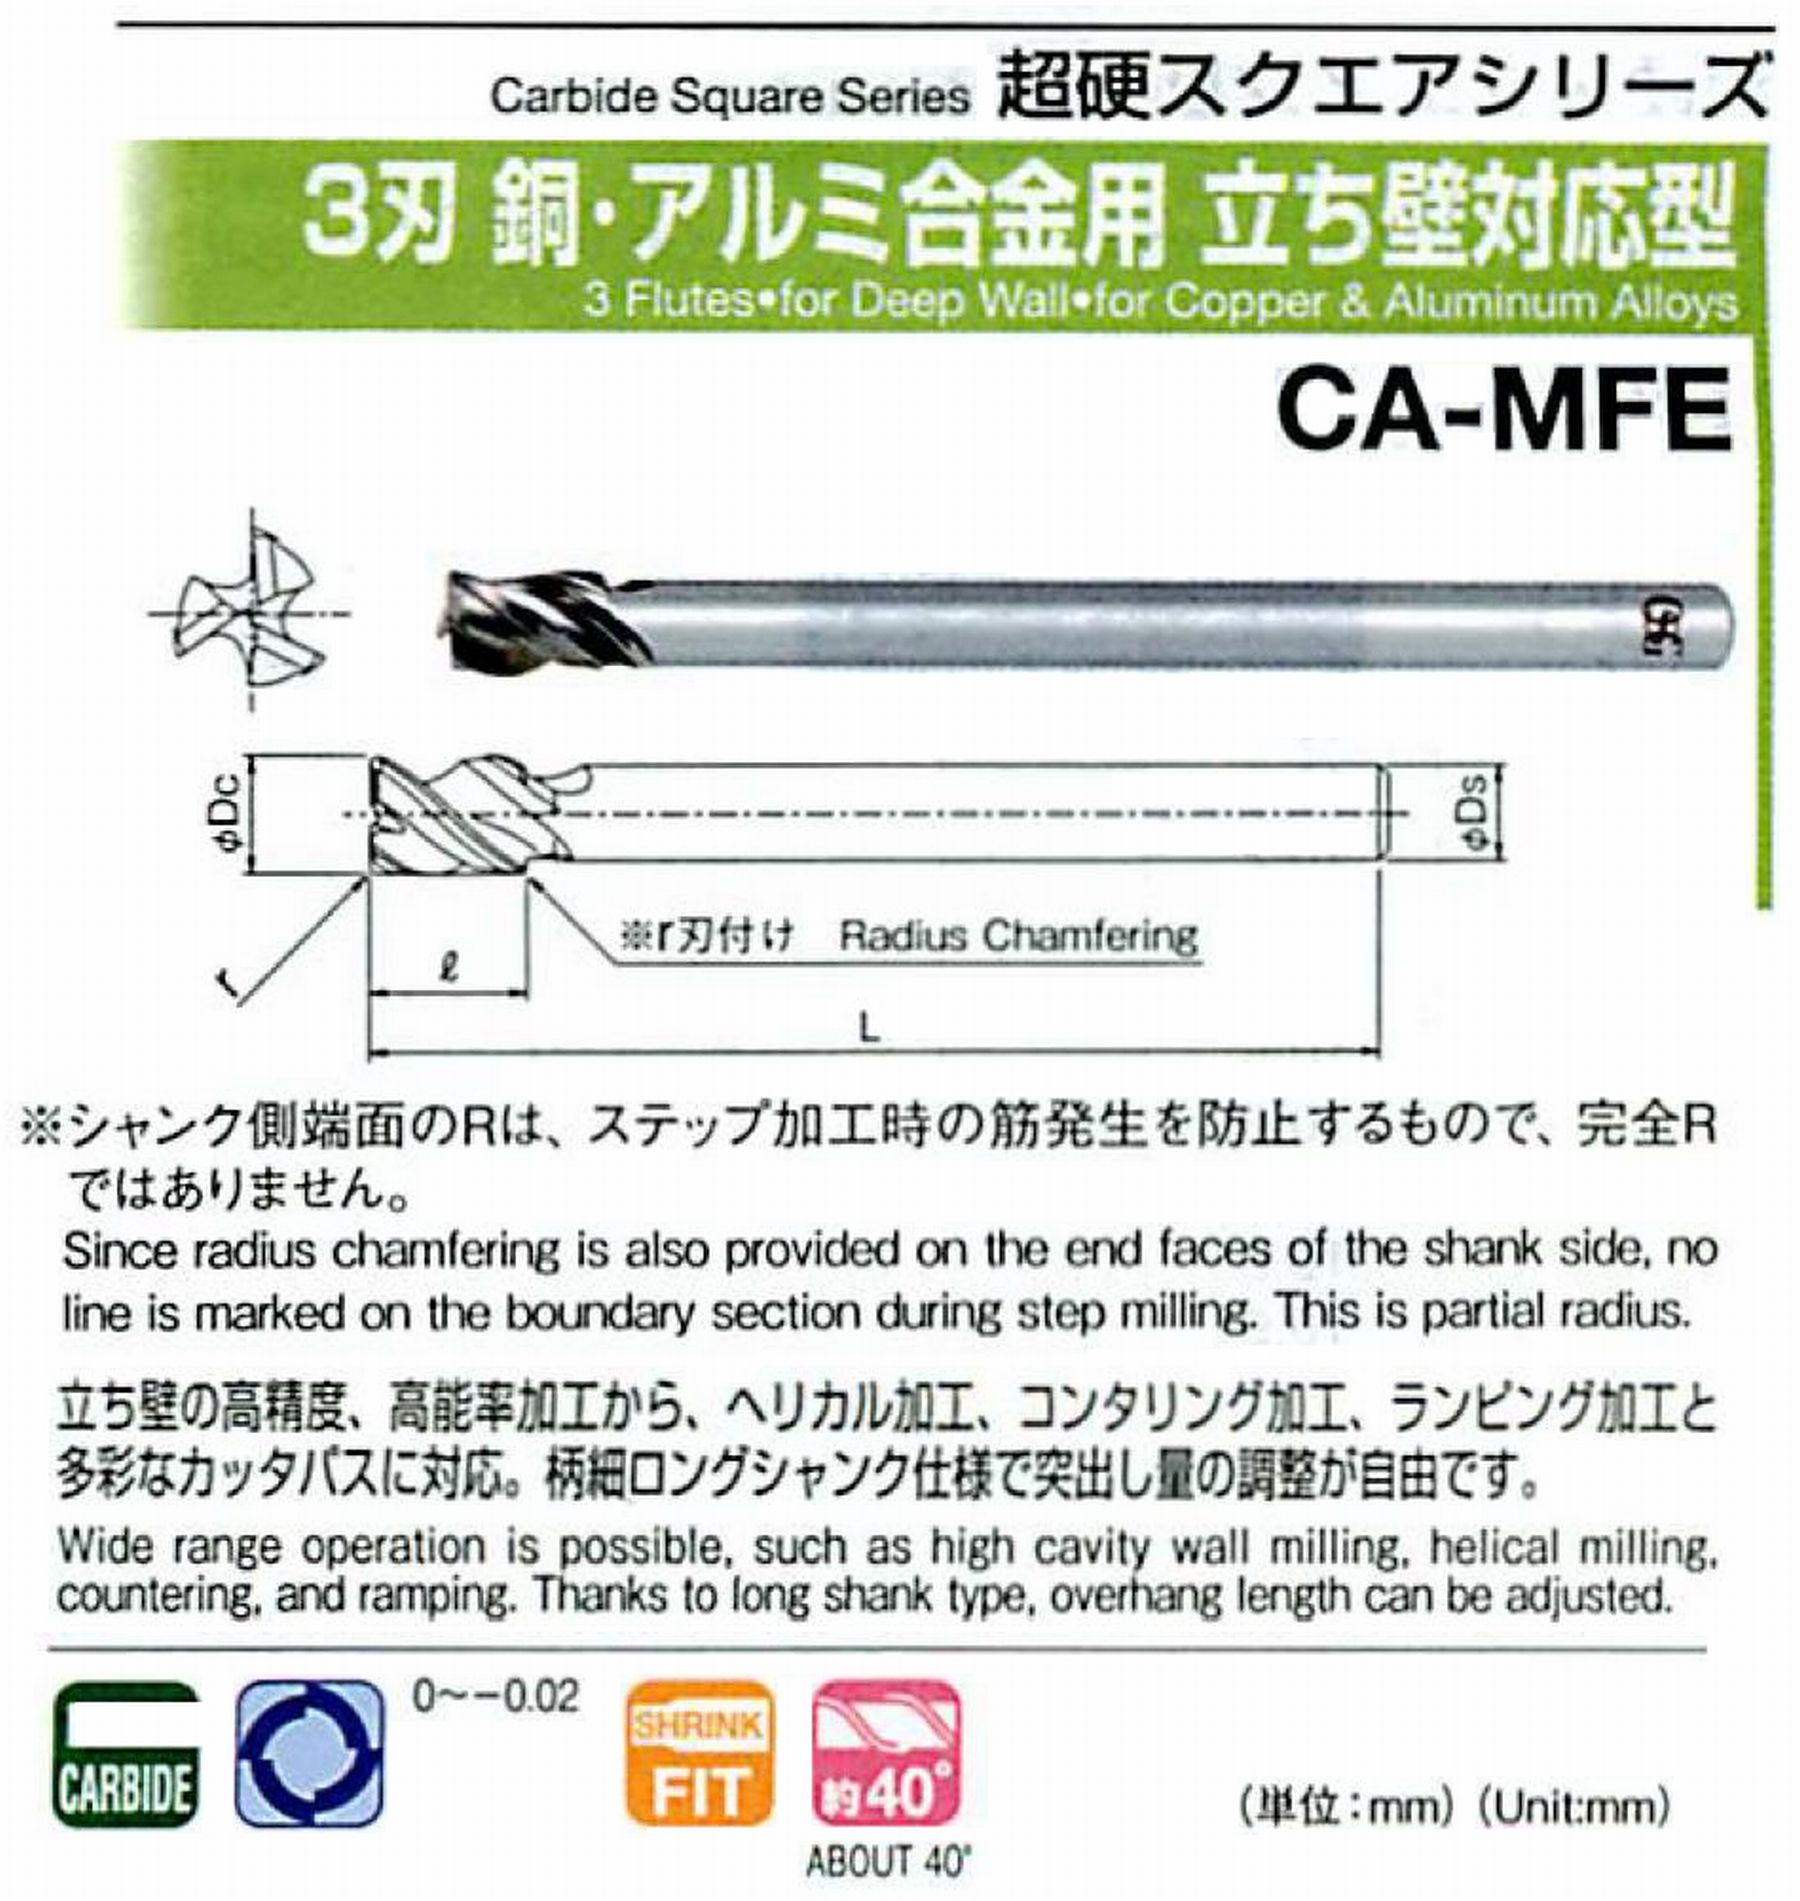 オーエスジー/OSG 3刃 銅・アルミ合金用立ち壁対応型 CA-MFE 外径×コーナ半径16×R1 全長170 刃長24 シャンク径14mm